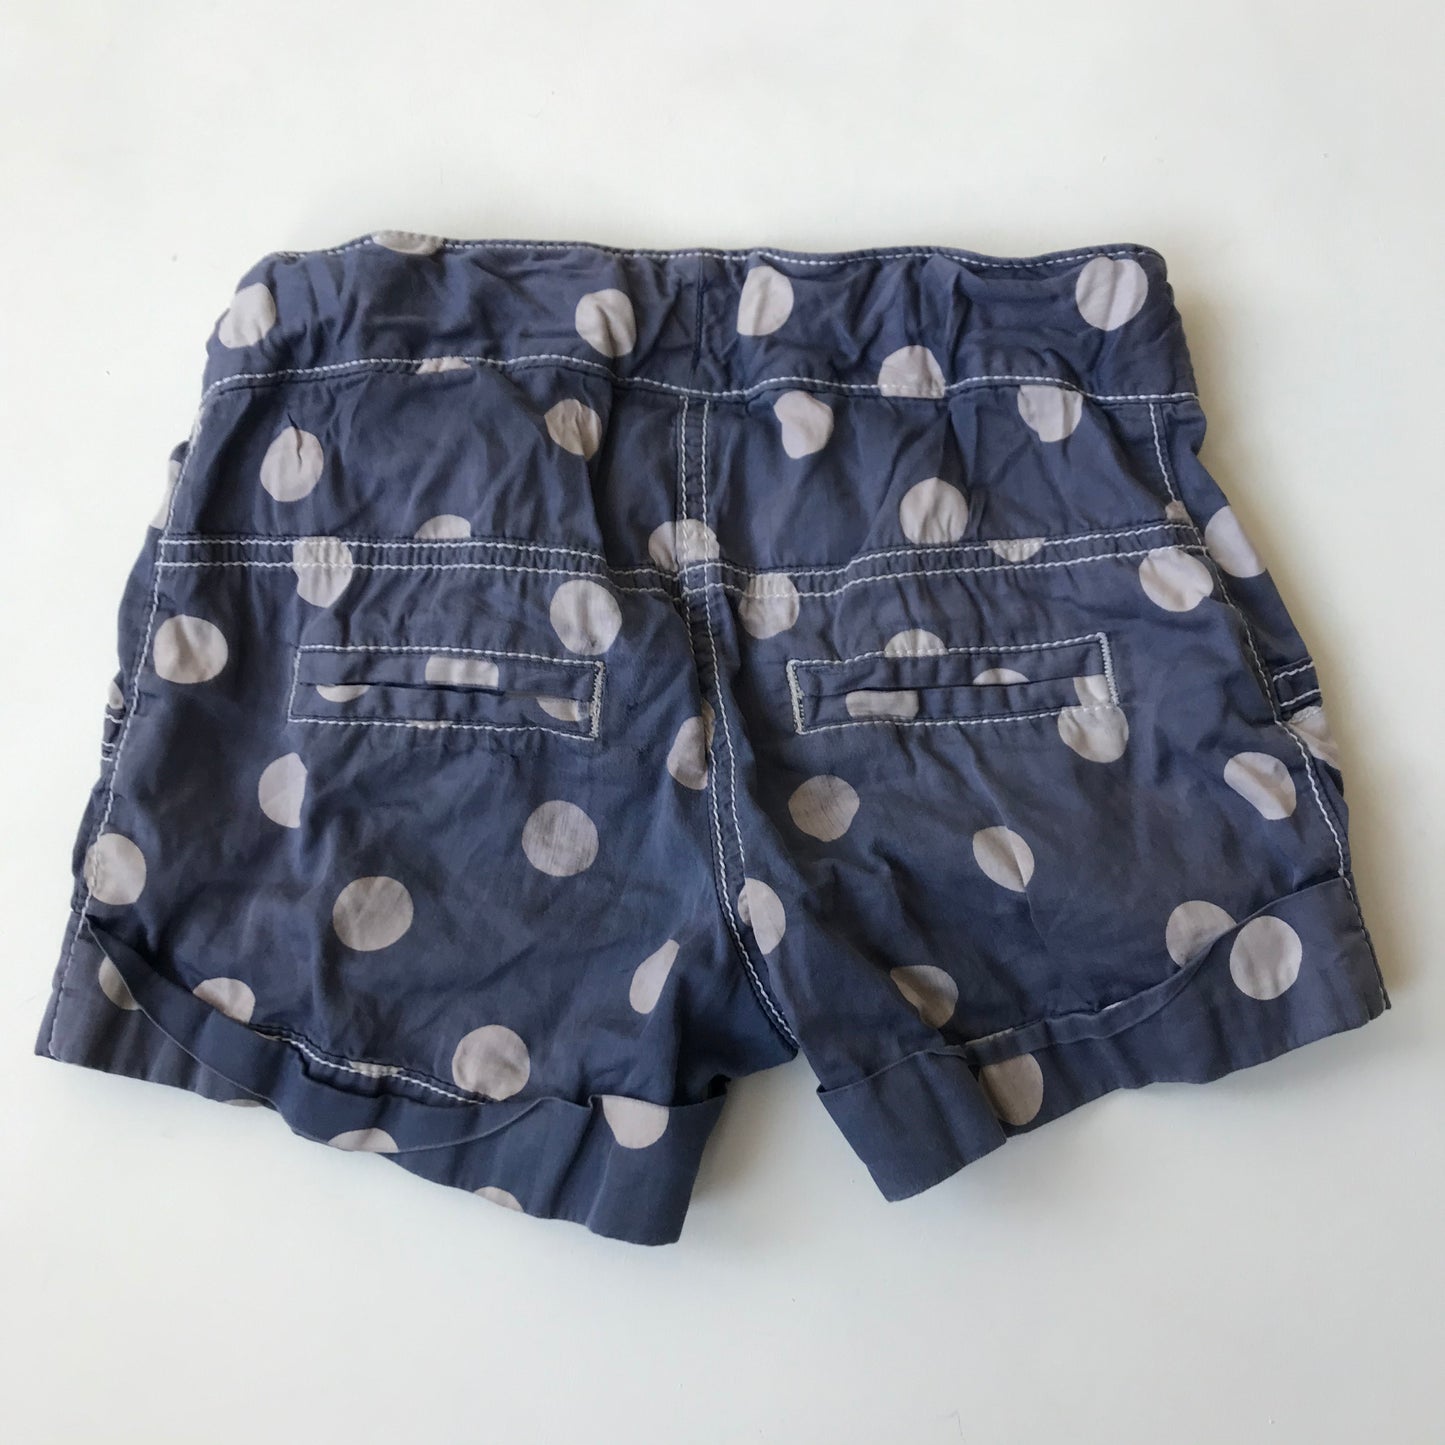 Shorts - Polka Dot - Age 7